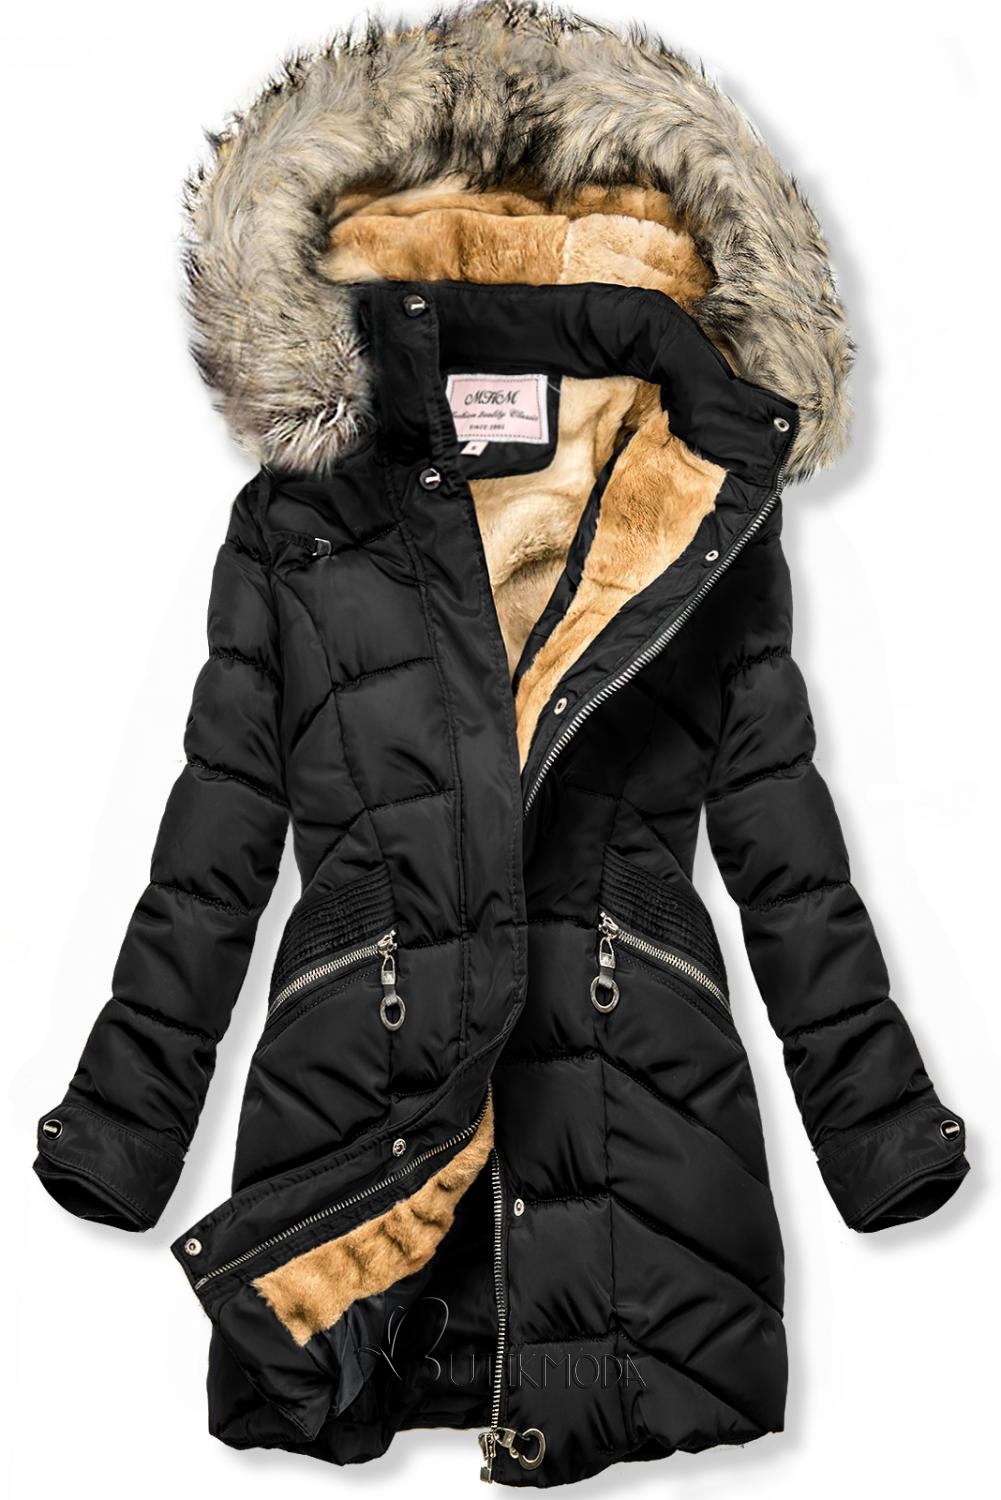 Fekete színű téli kabát, levehető kapucnival